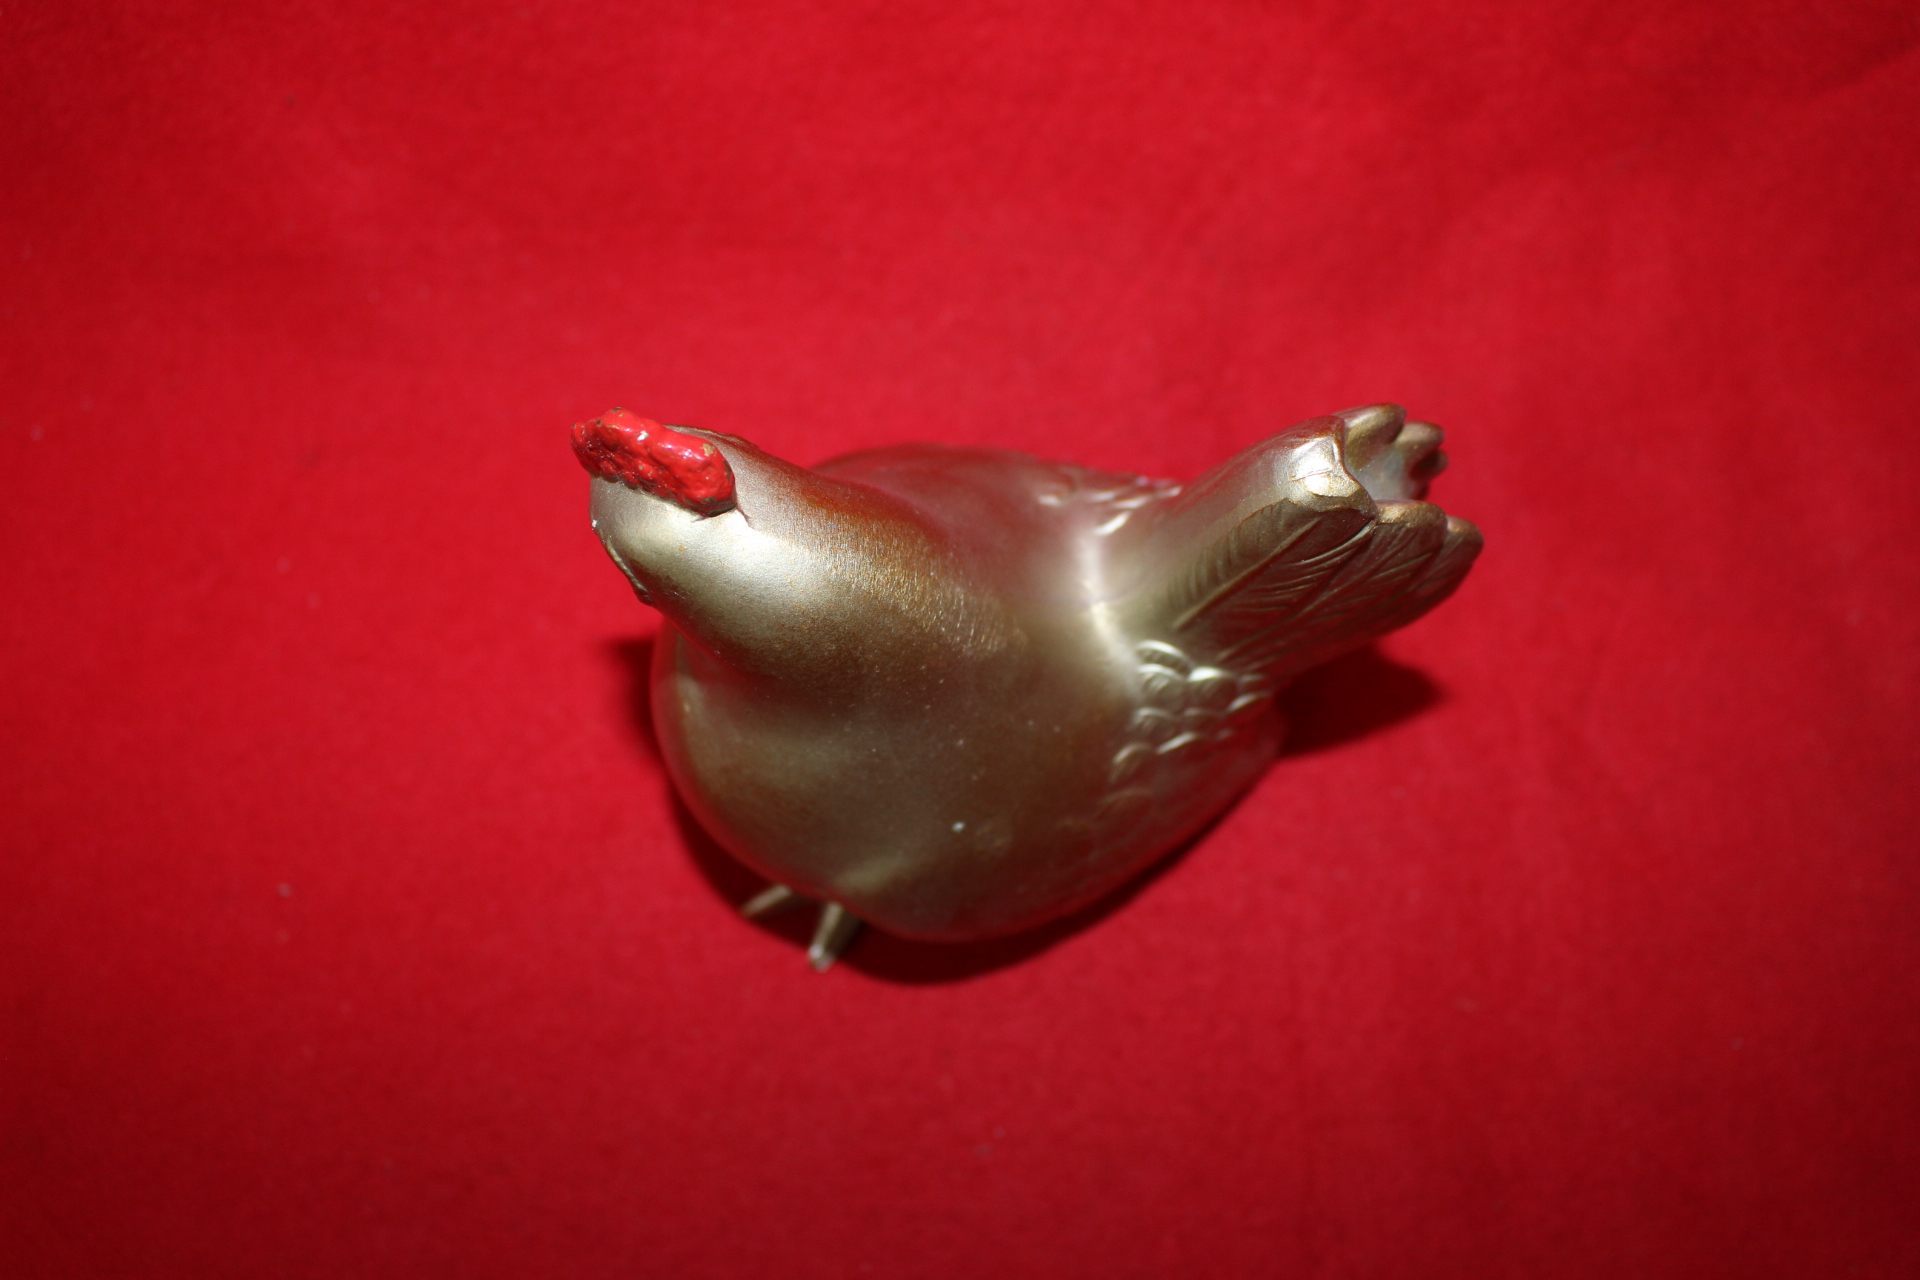 금속합금재질로된 닭 조각상